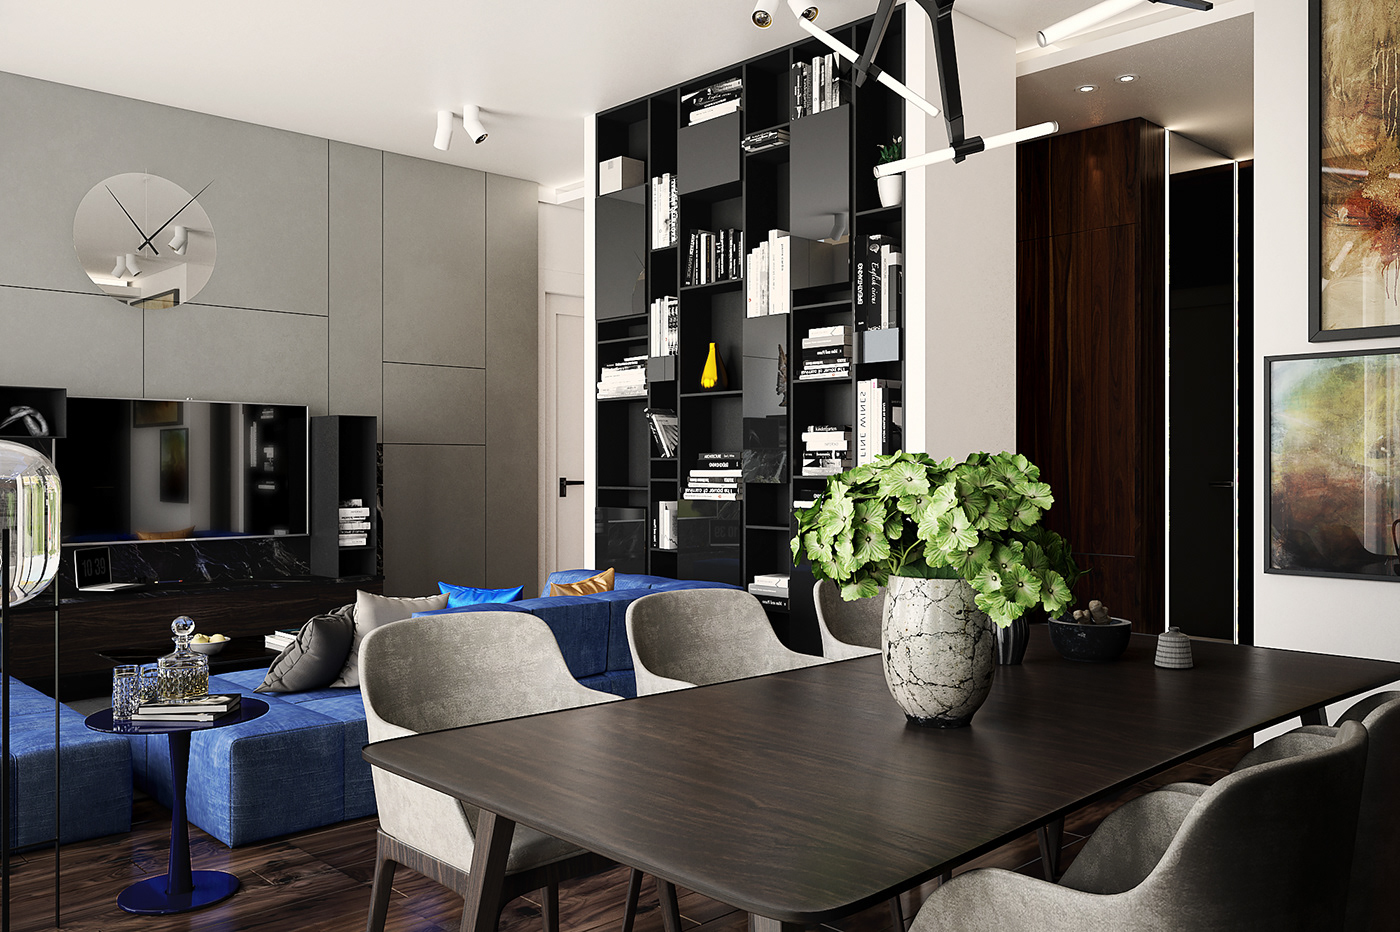 Interior interiordesign design modeling rendering visualisation 3D 3dmodeling modern furniture